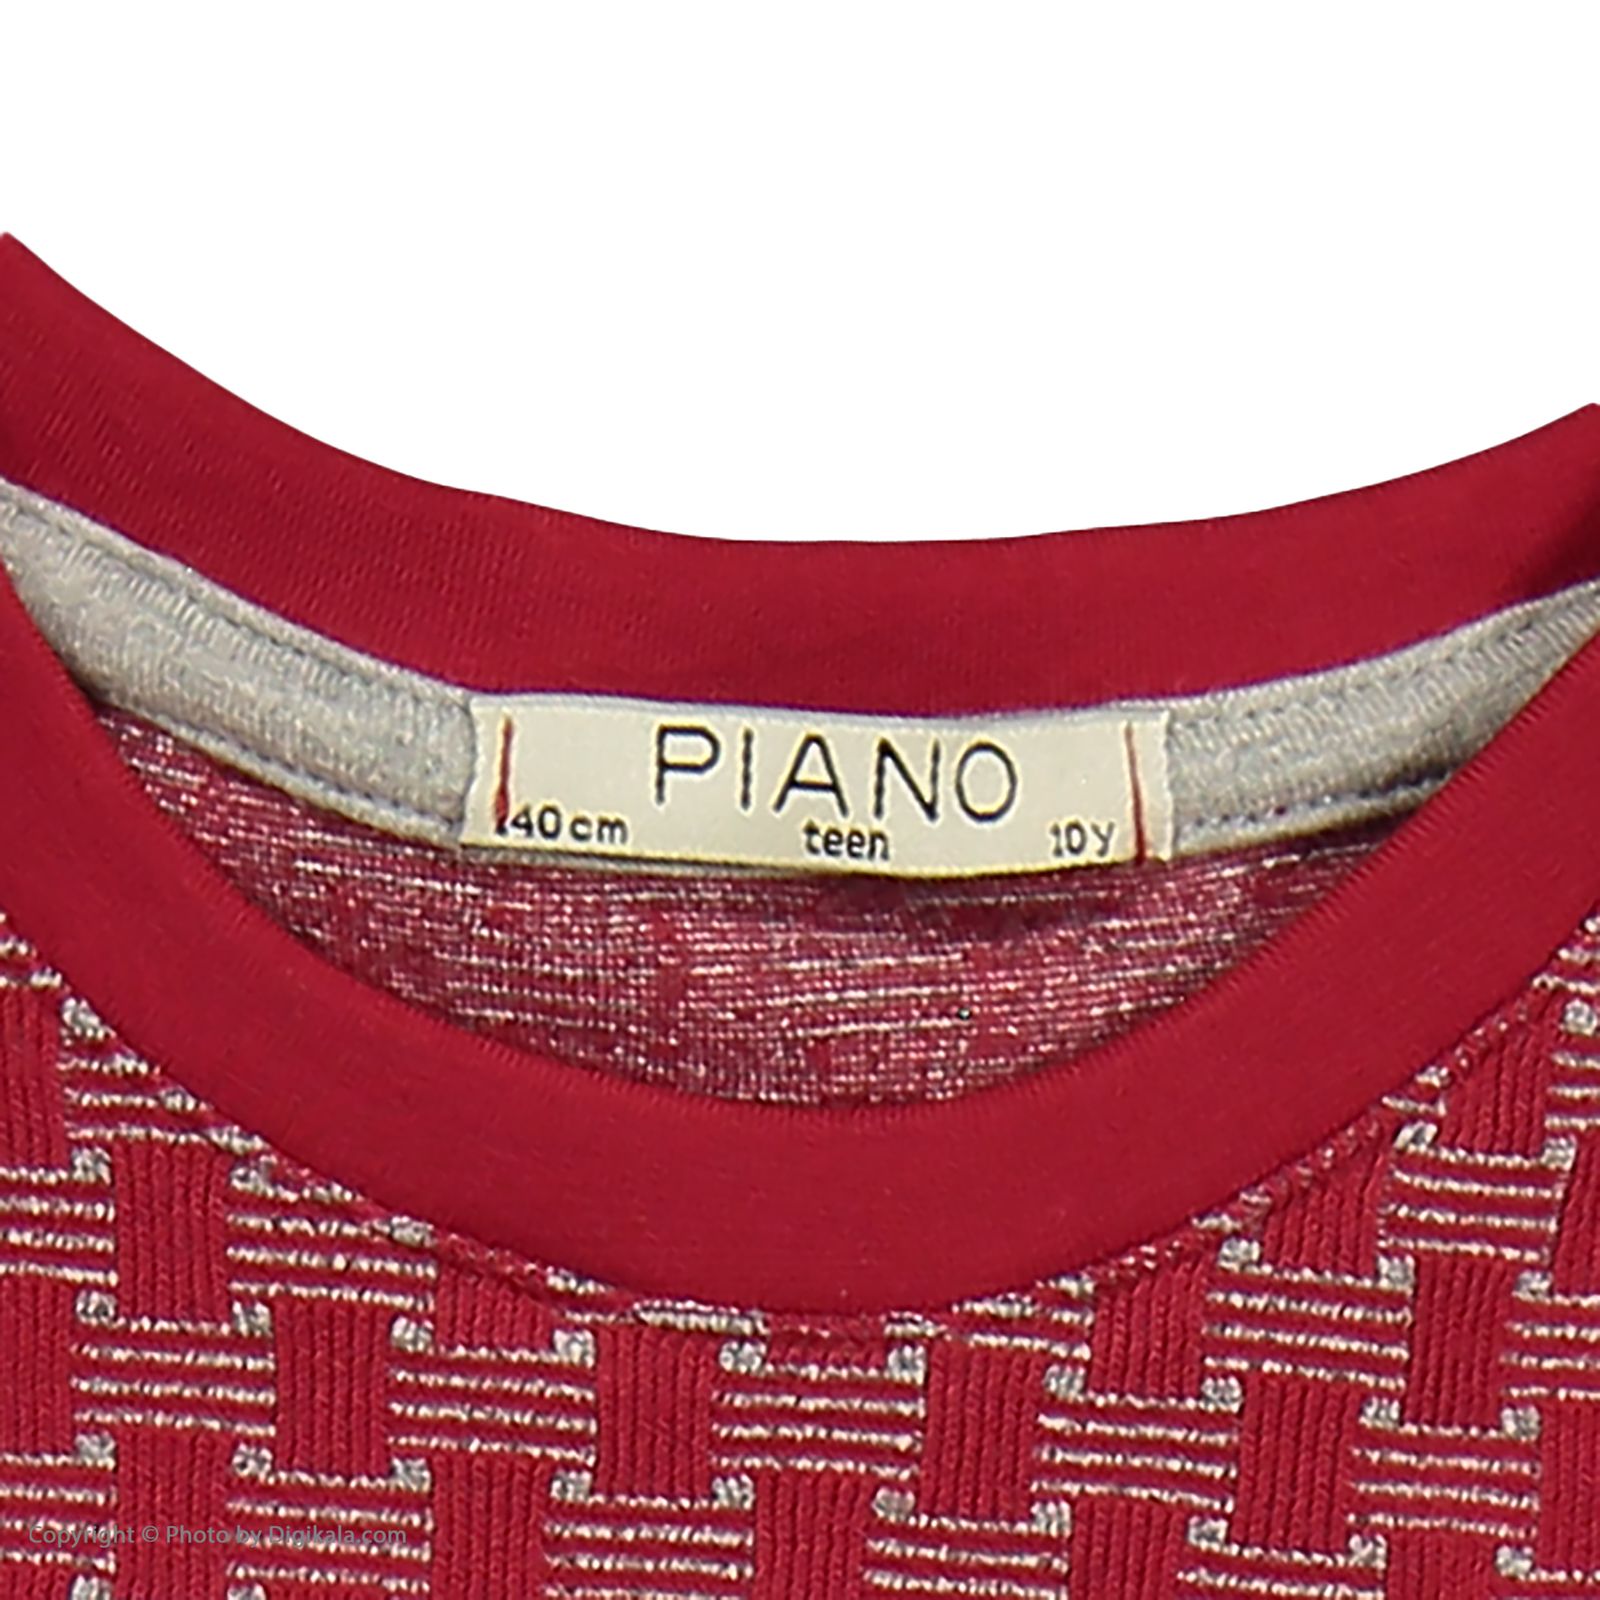 تی شرت دخترانه پیانو مدل 1009009901649-72 -  - 5